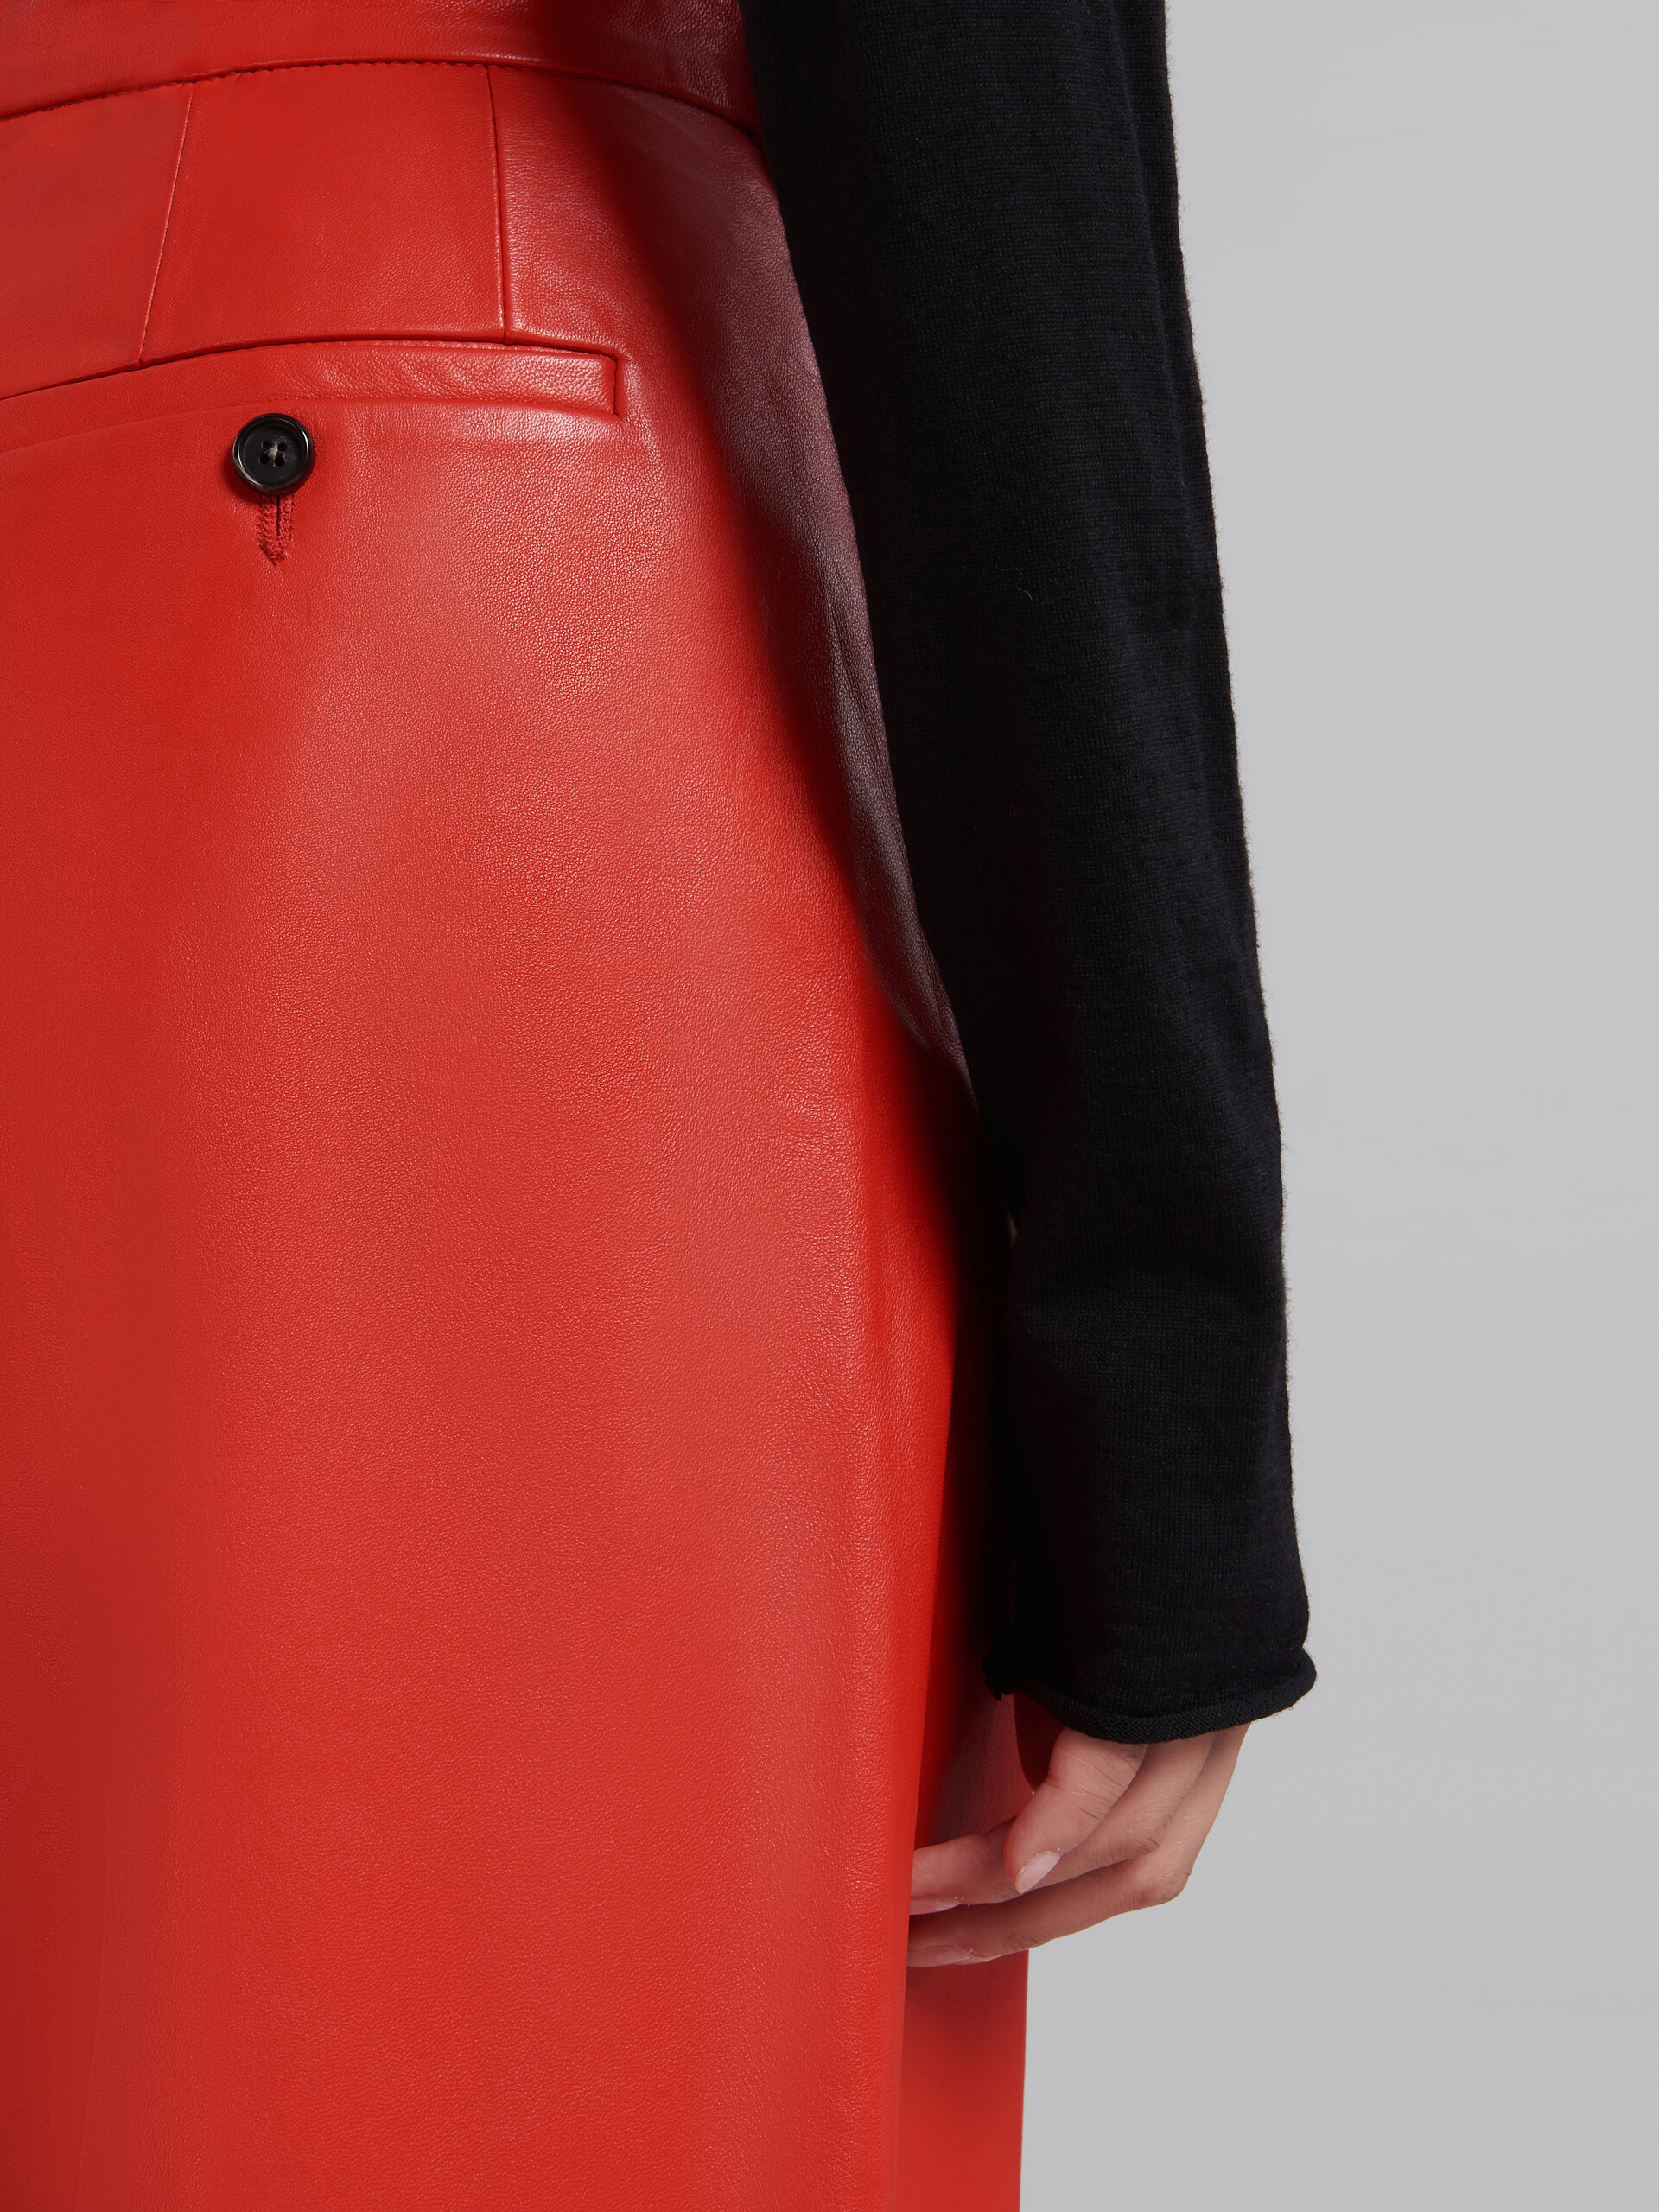 Pantalón de sastre rojo de piel de napa - Pantalones - Image 4